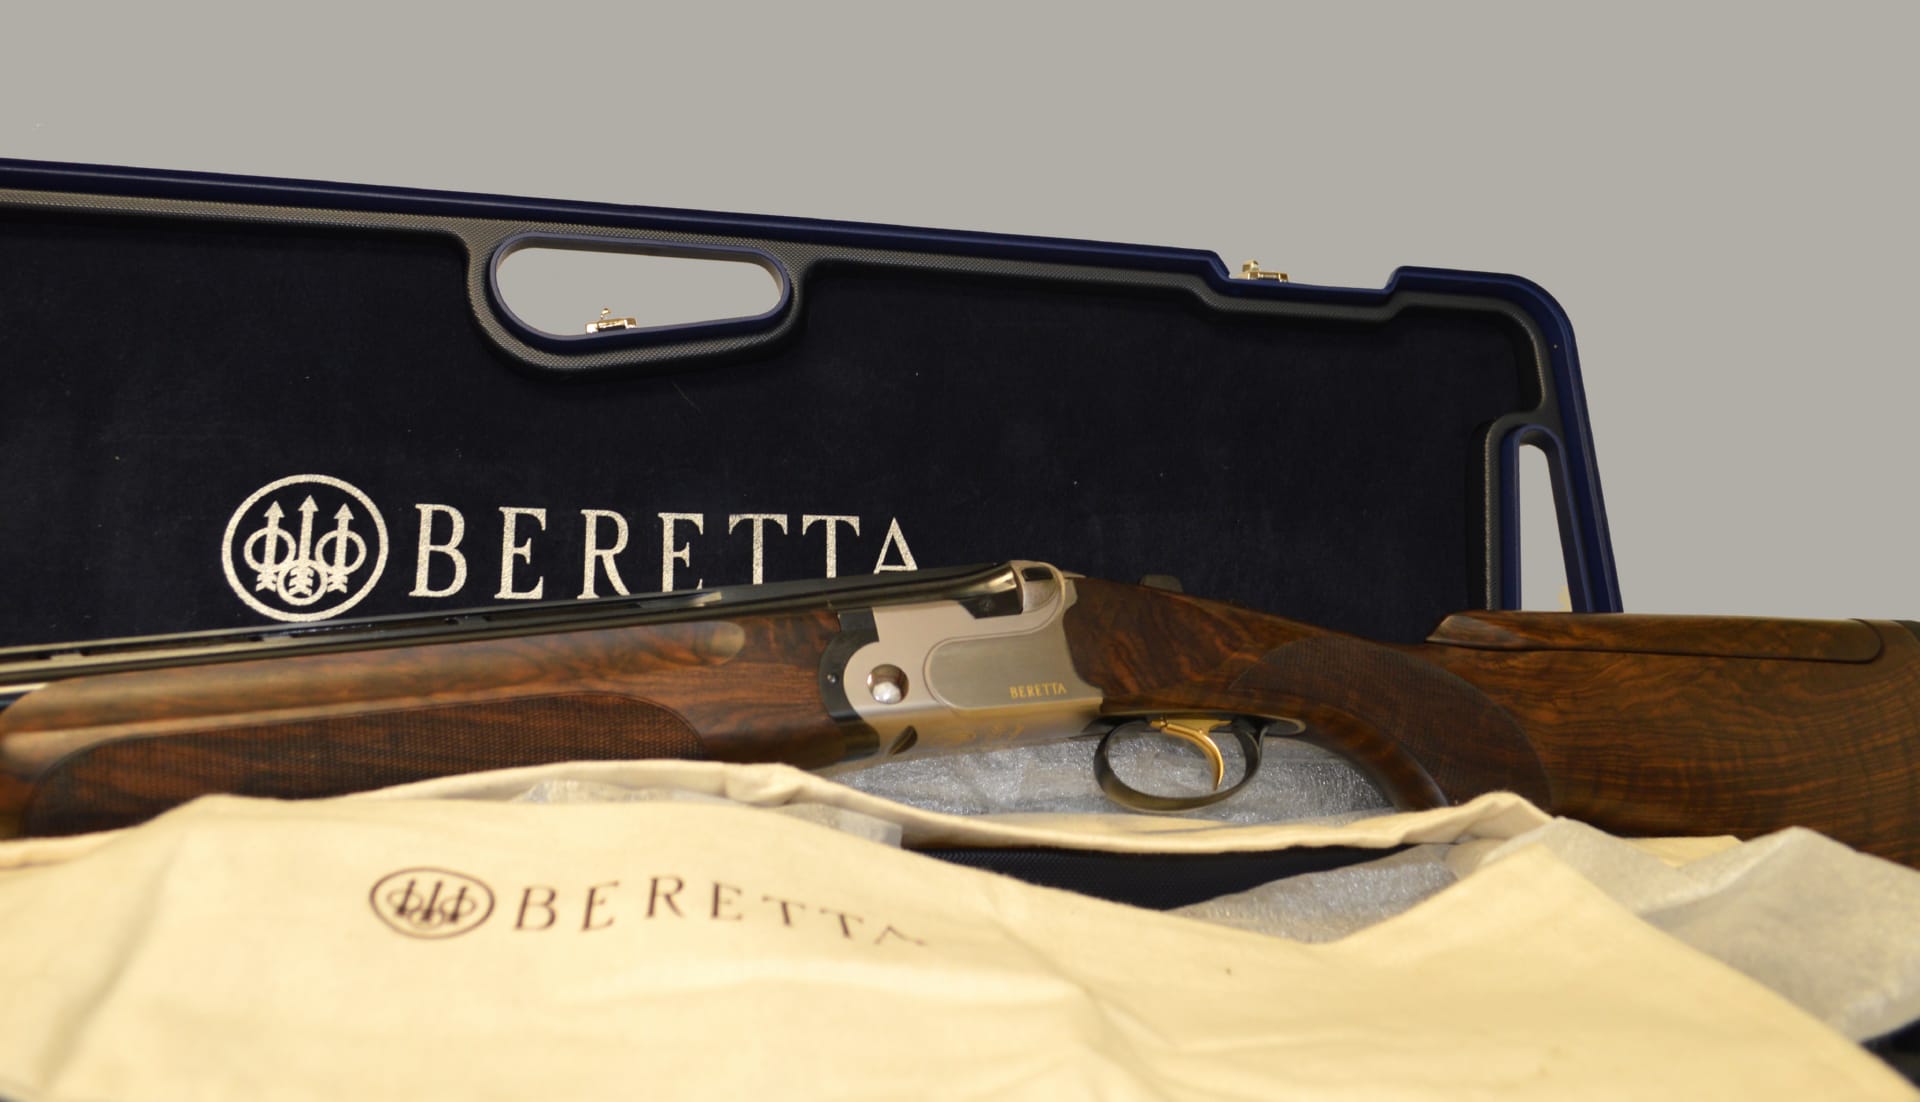 Beretta Shotgun at 1024 x 1024 iPad size wallpapers HD quality